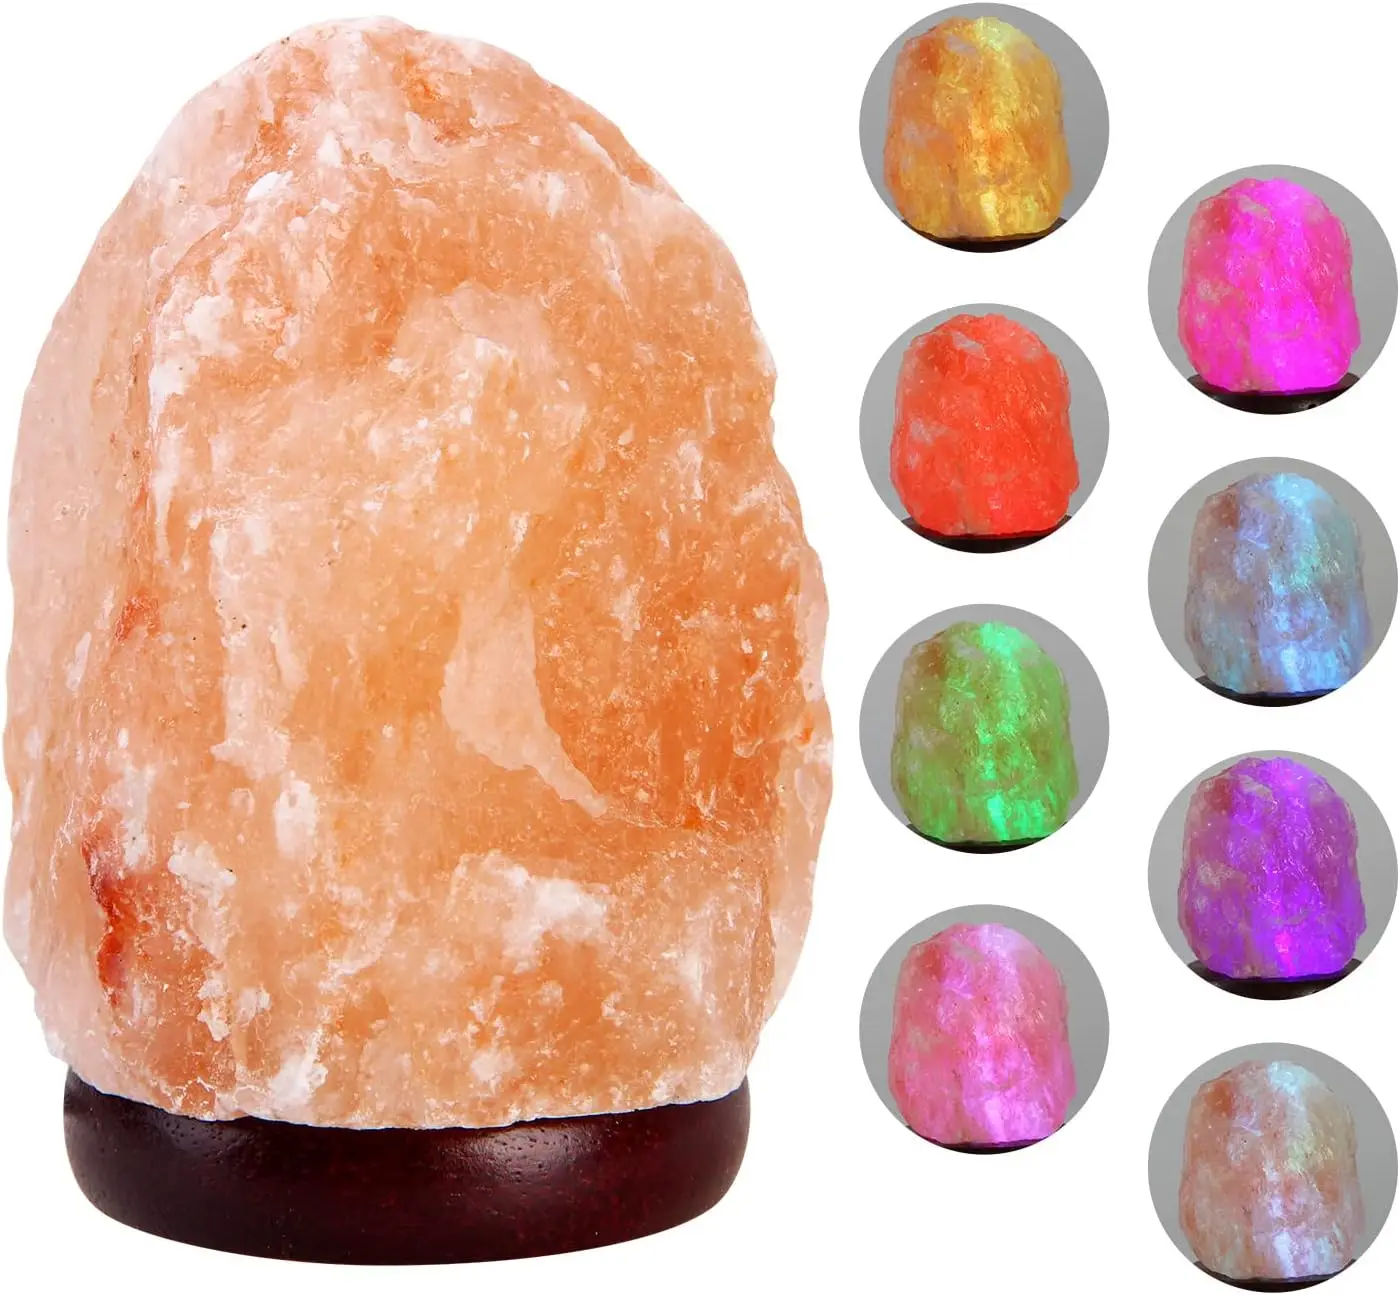 

Hot Popular Usb Salt Lamp Himalayan Natural Crystal Salt Stone Enhancement to Your Mood Home Decoration